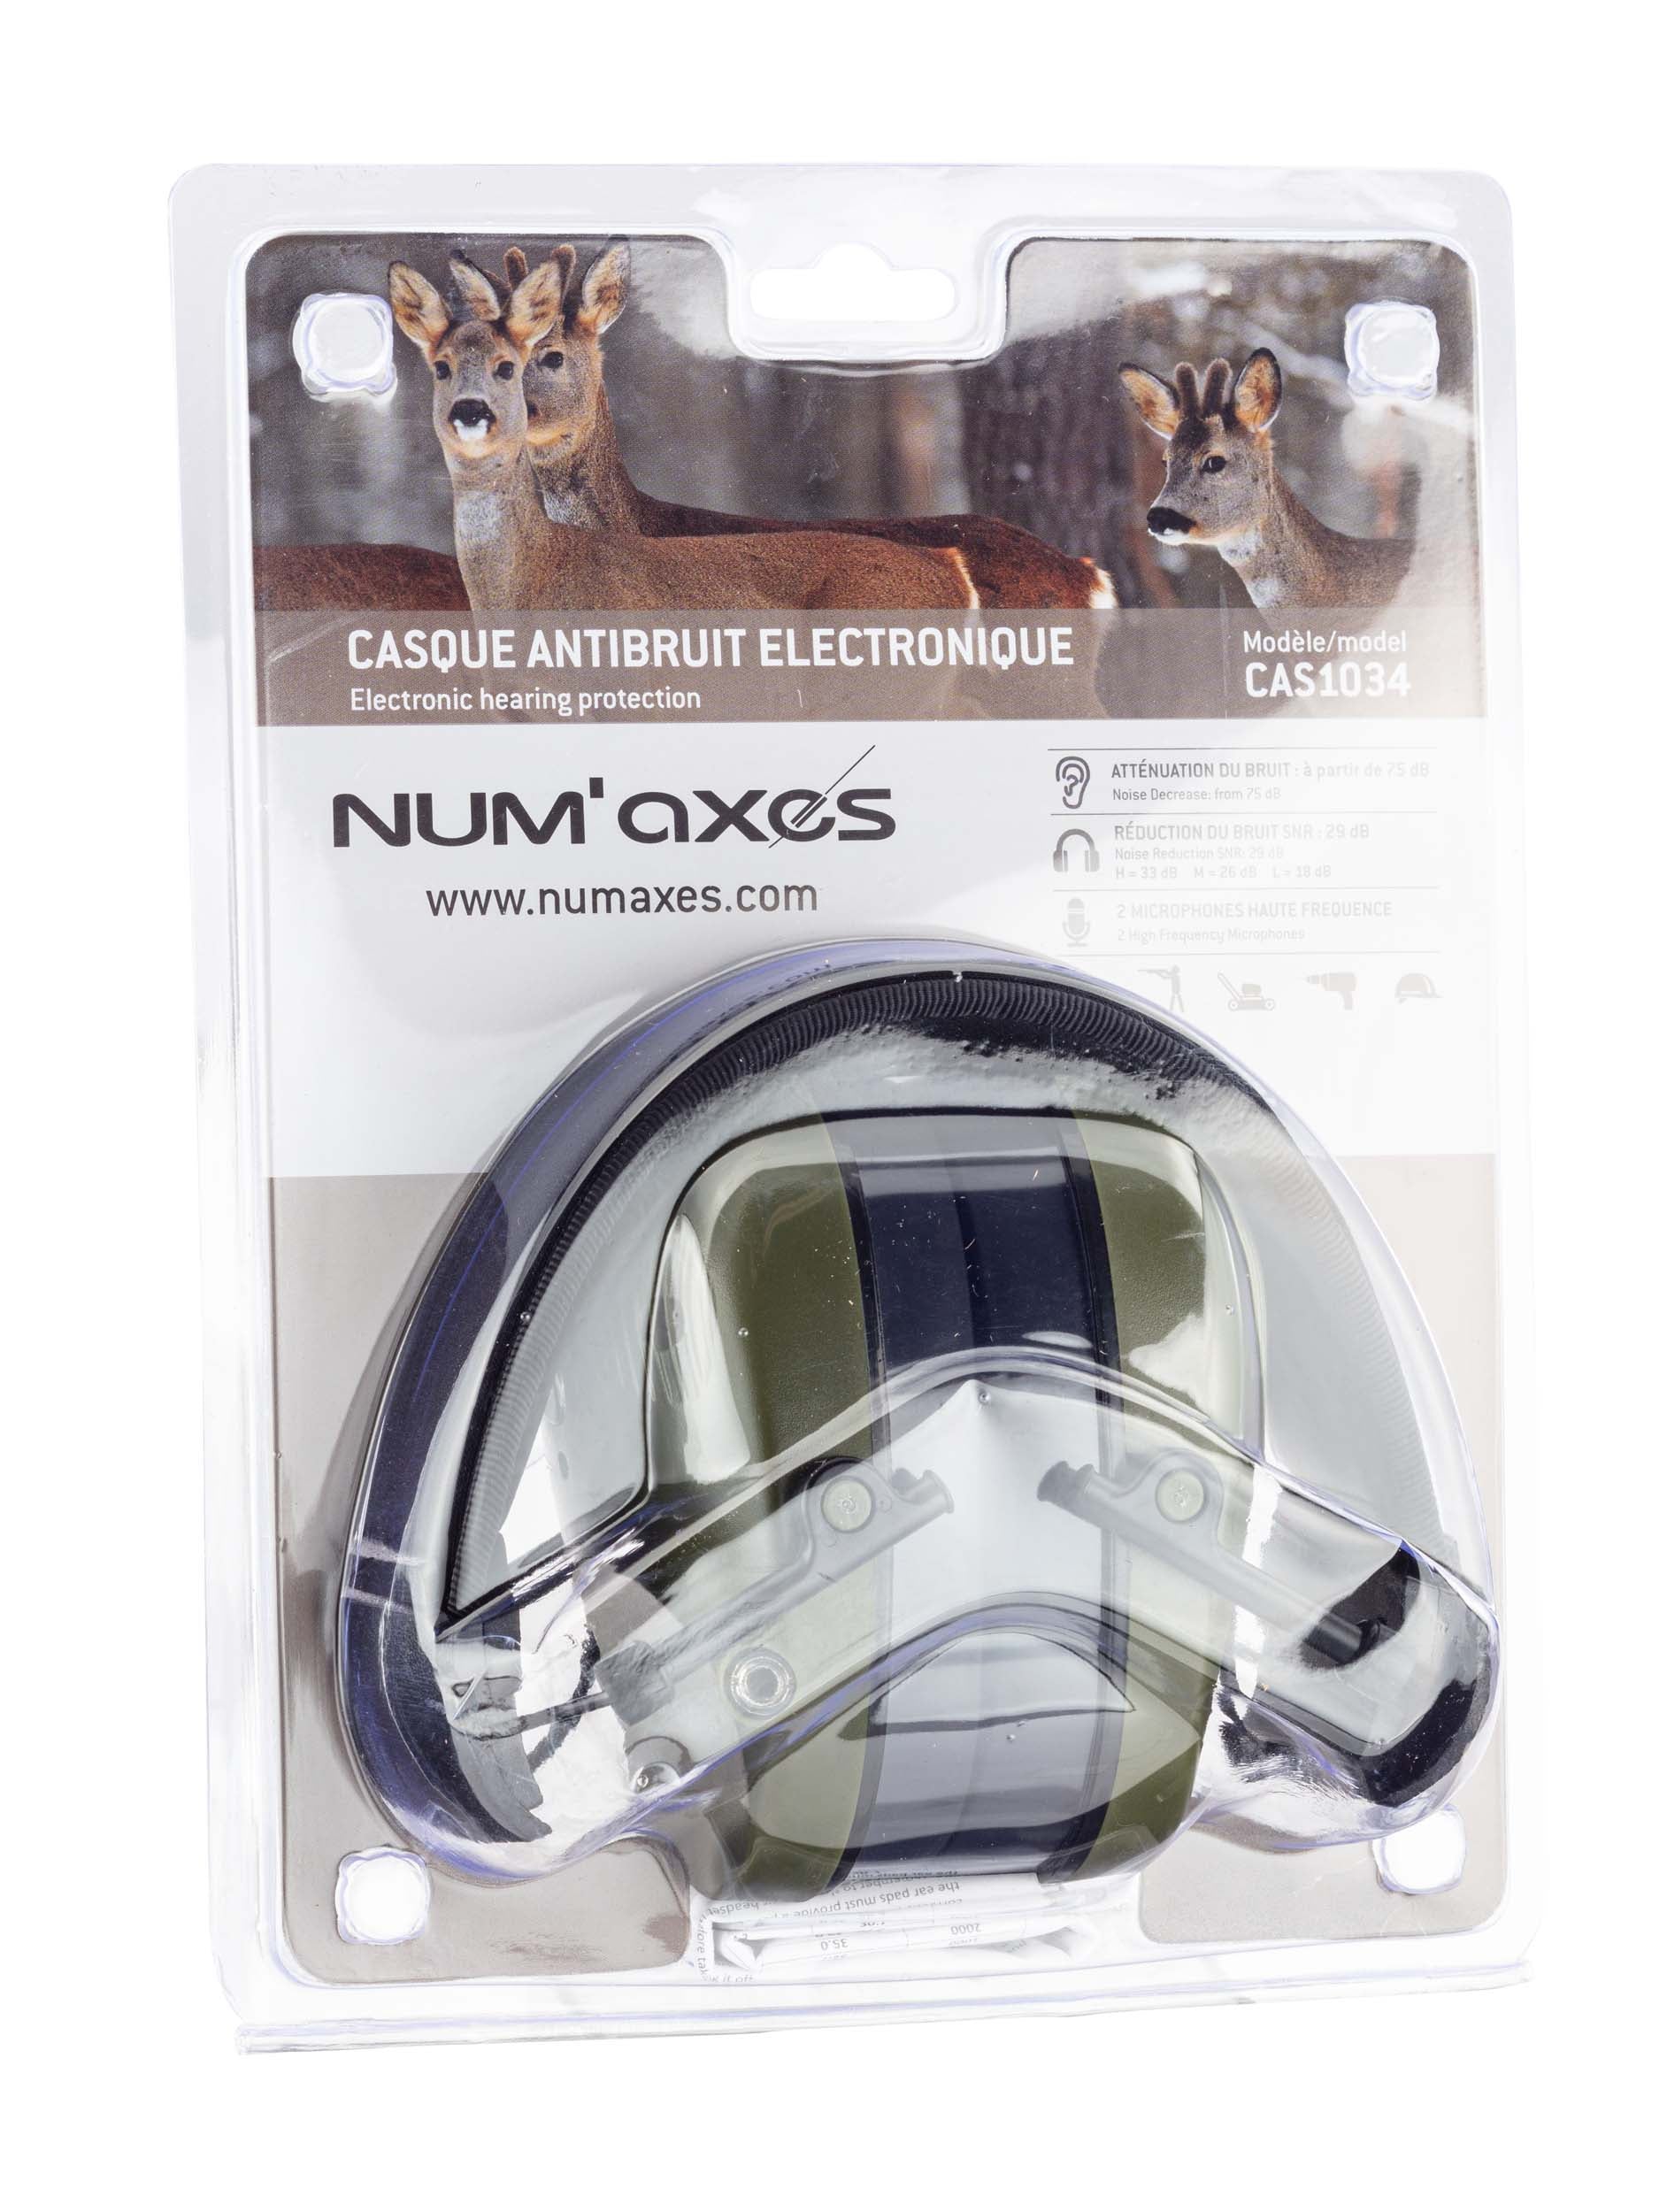 Casque antibruit électronique NUM'AXES CAS1034 Noir